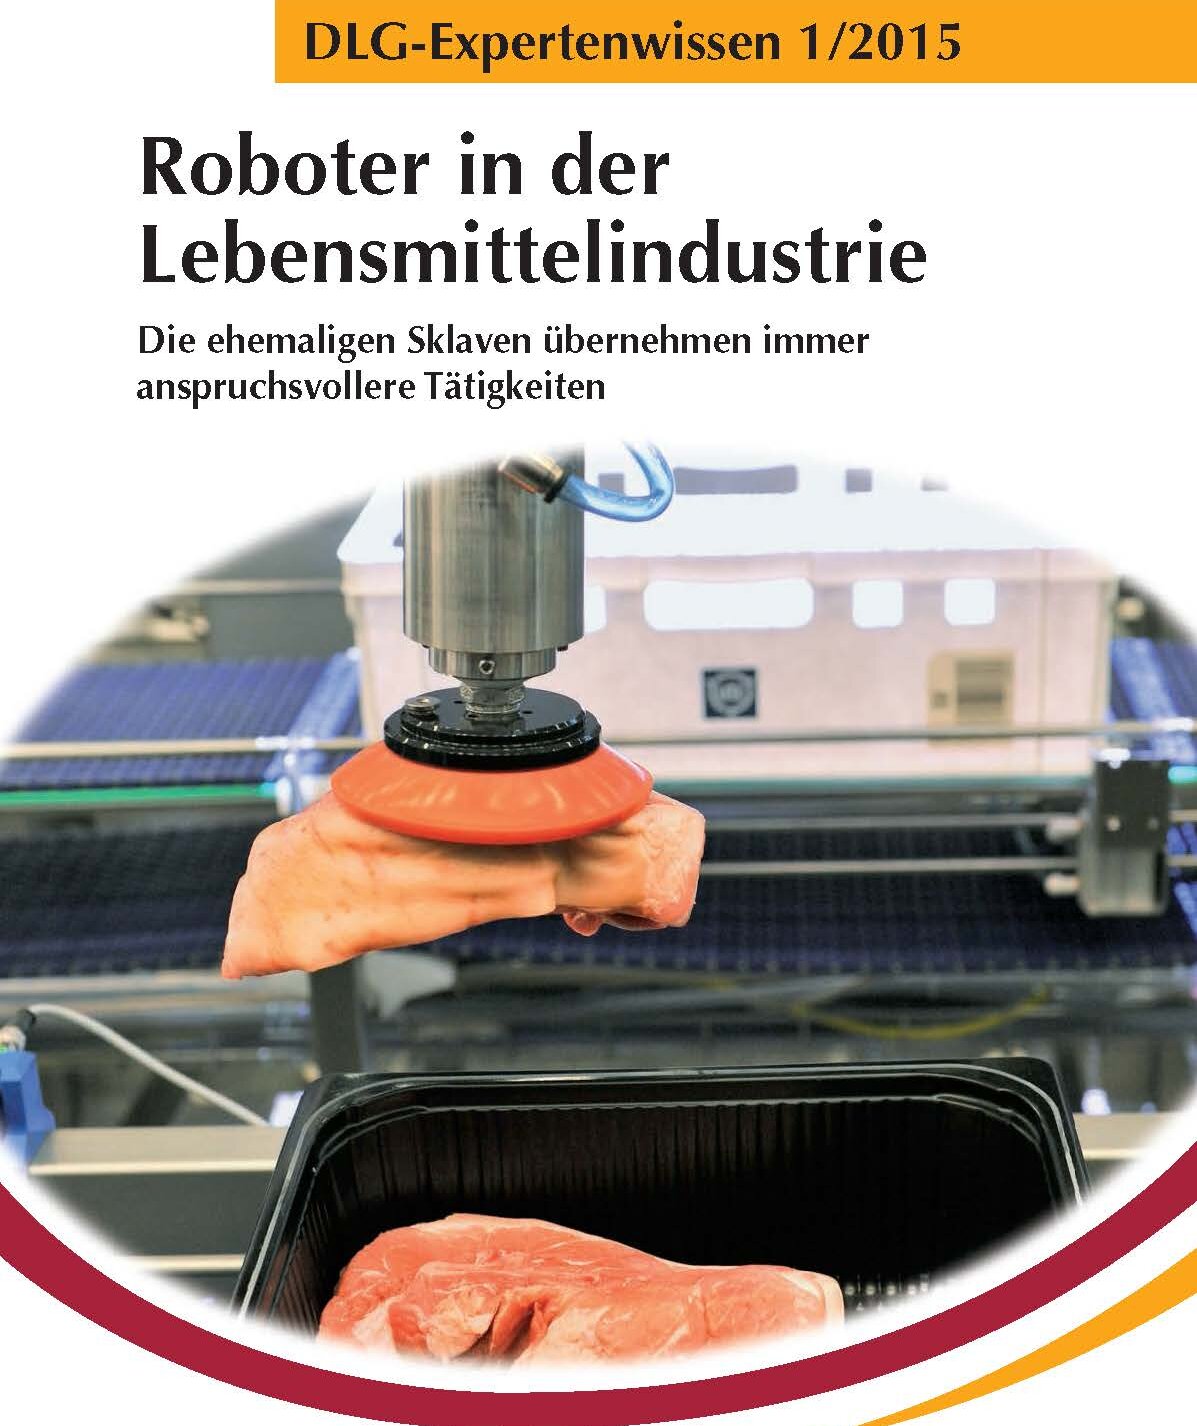 Robotik - Roboter in der Lebensmittelindustrie 